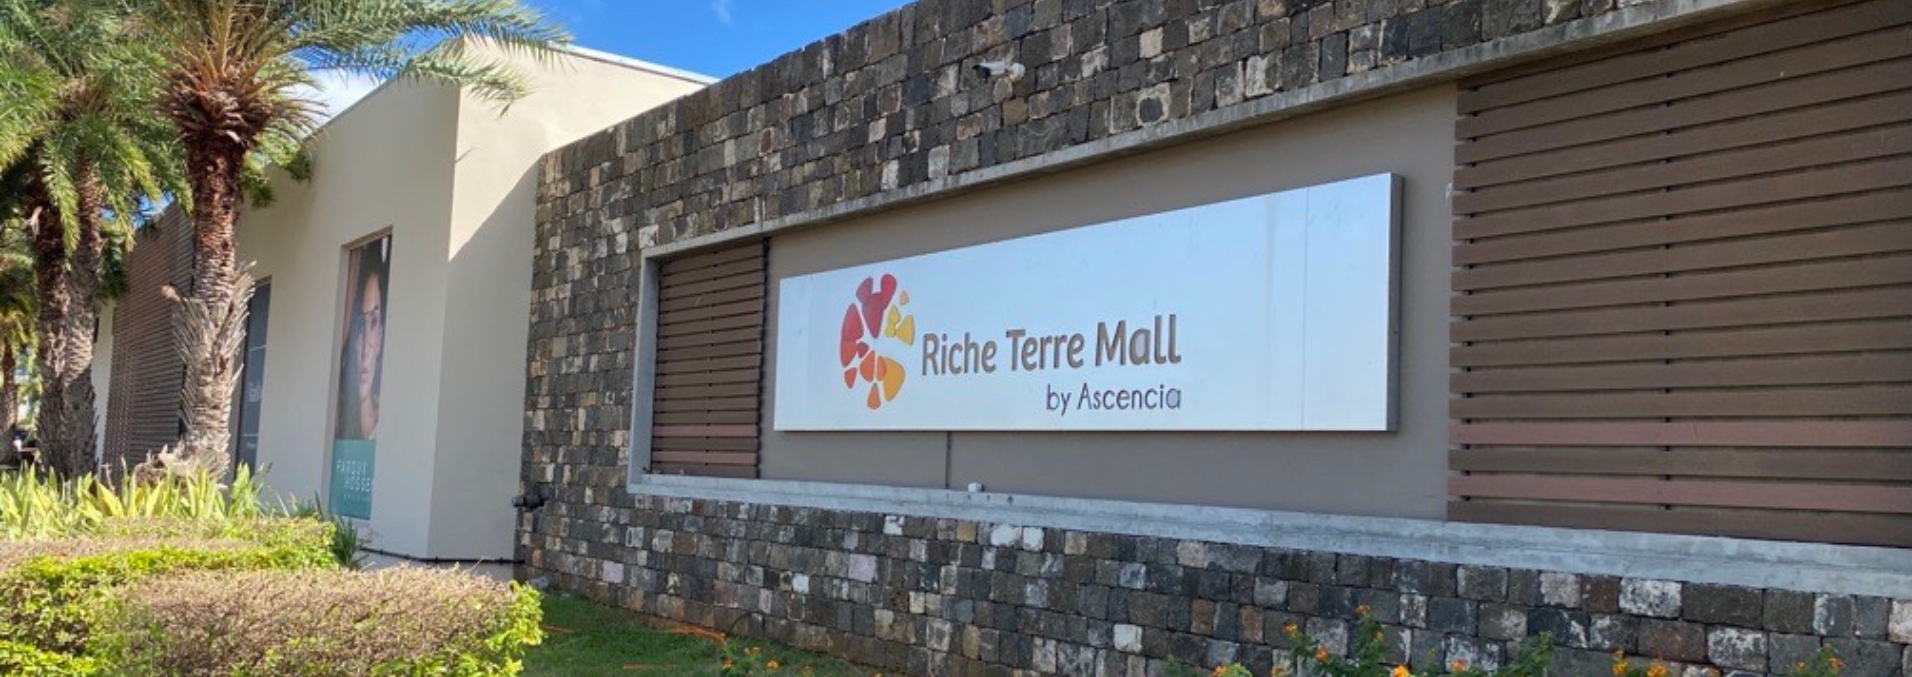 Riche Terre Mall